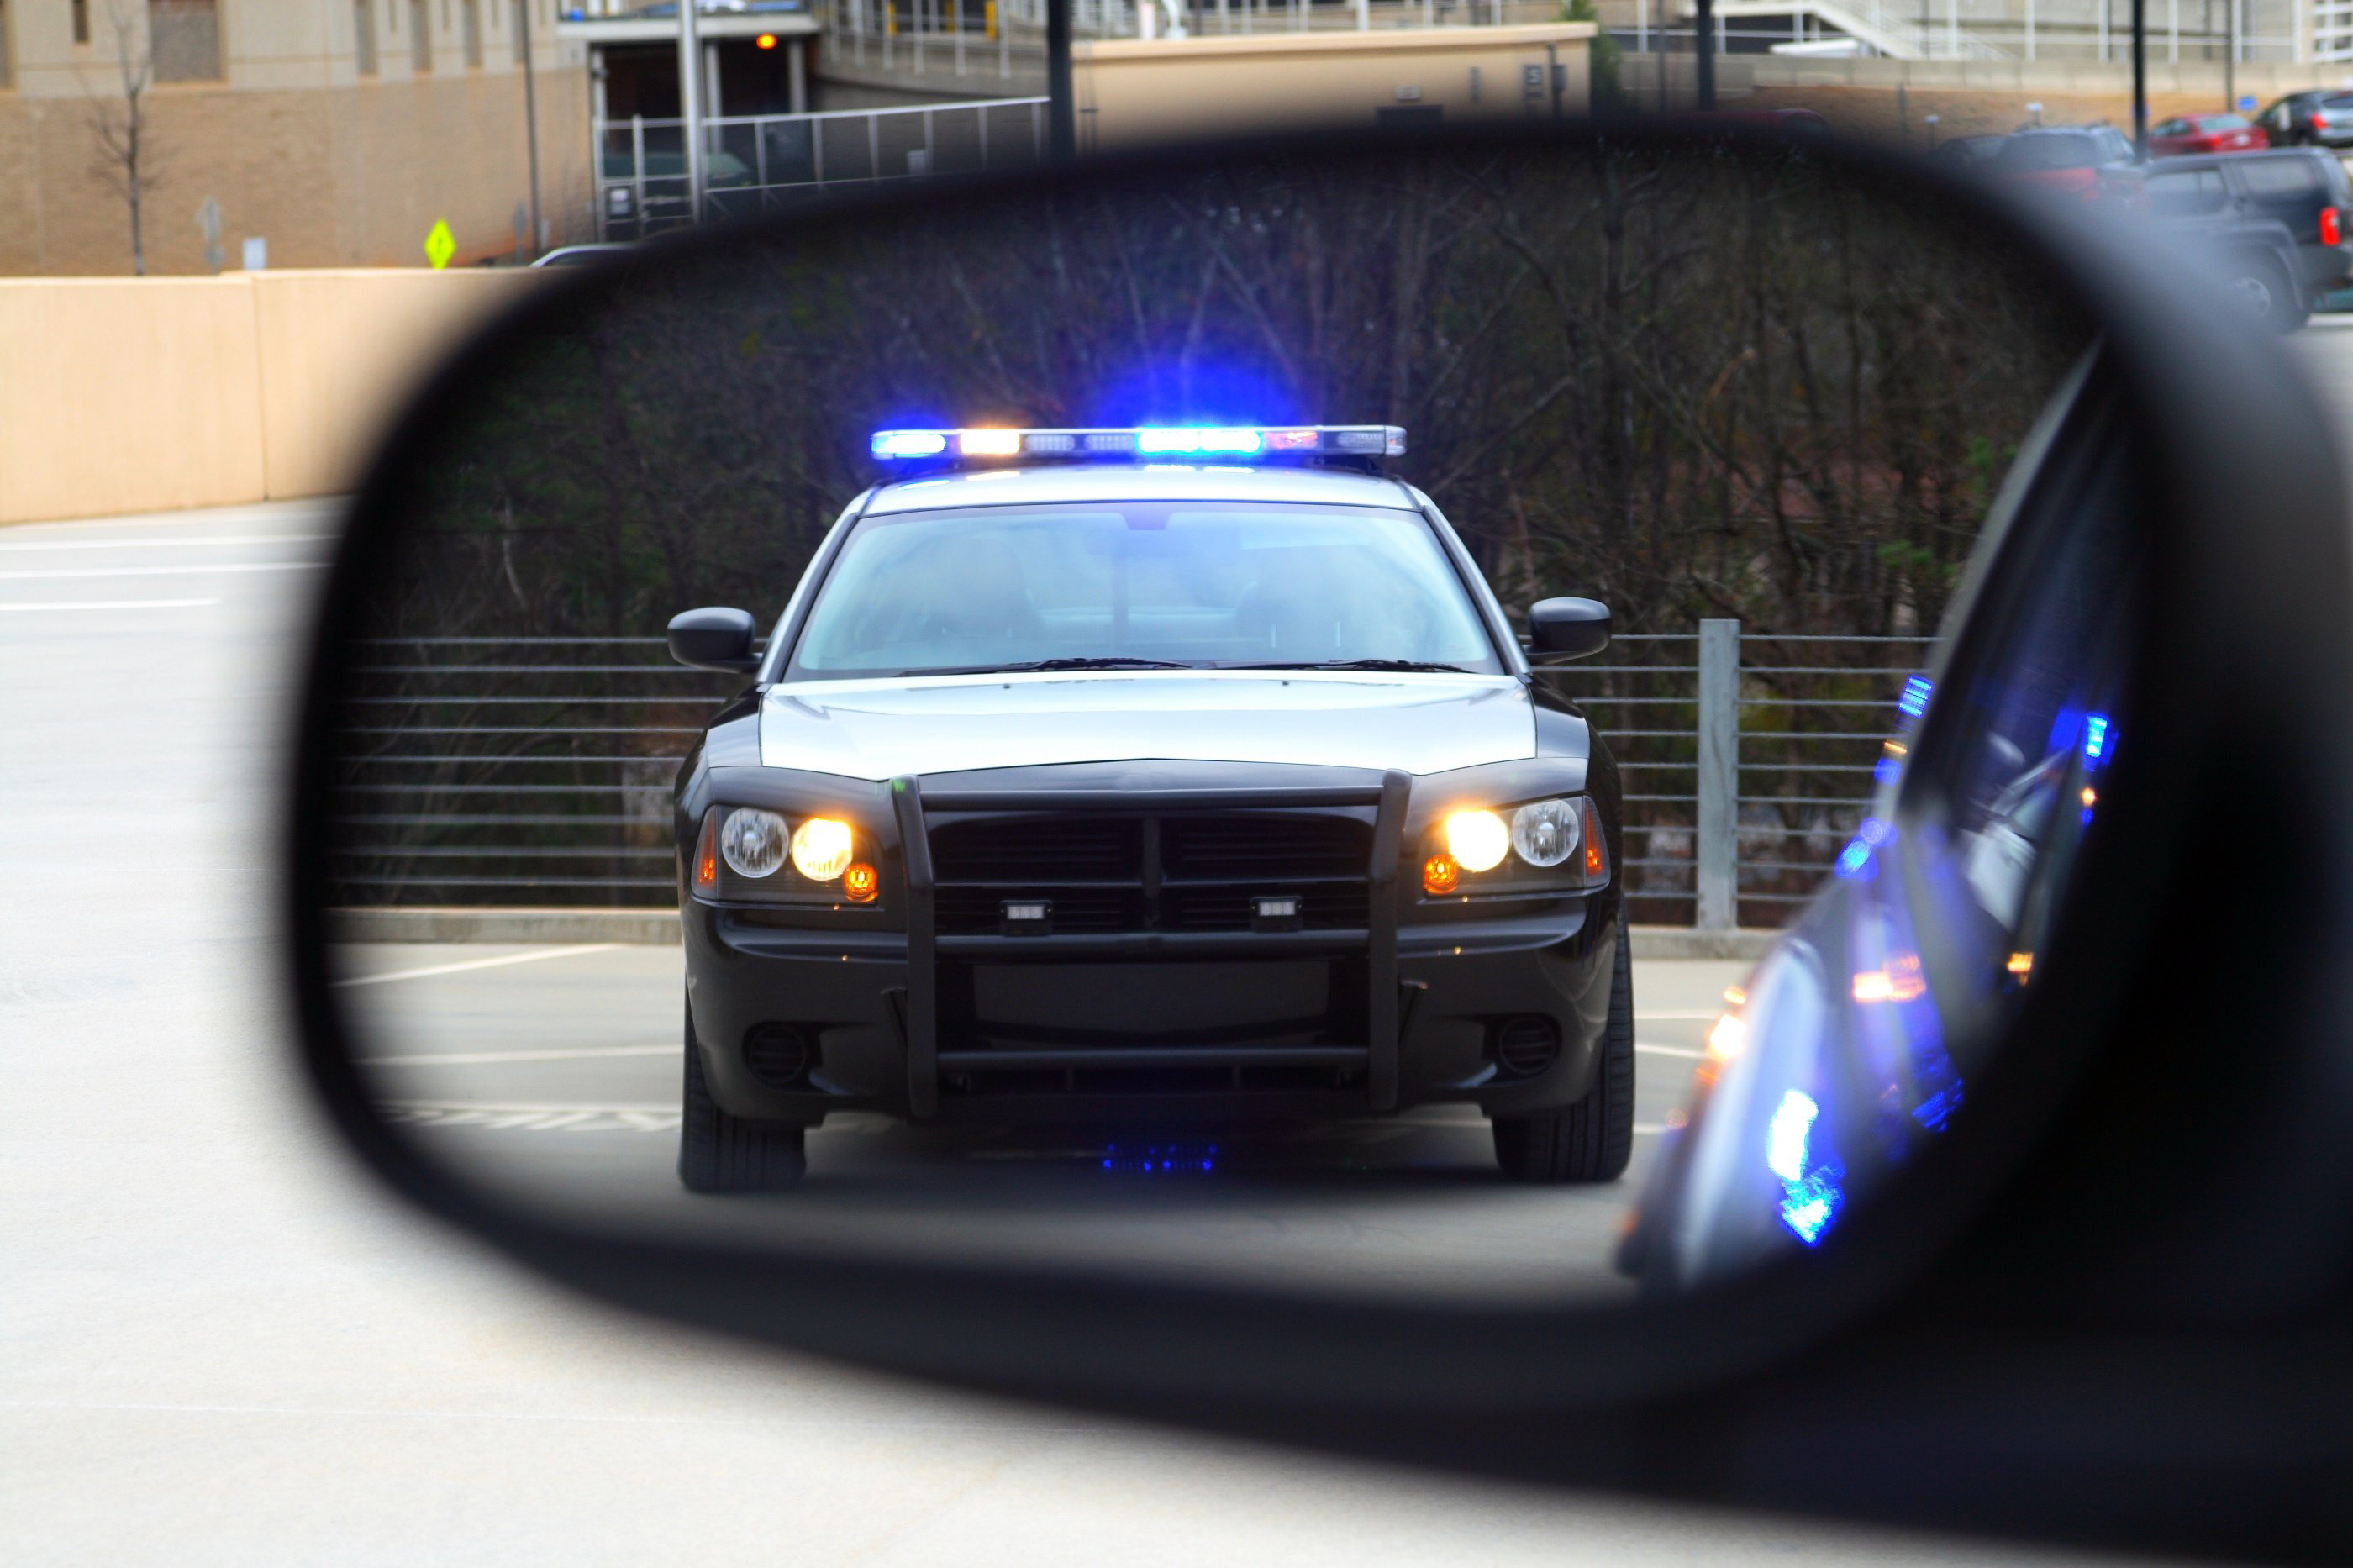 Cop in rearview mirror.jpg detail image